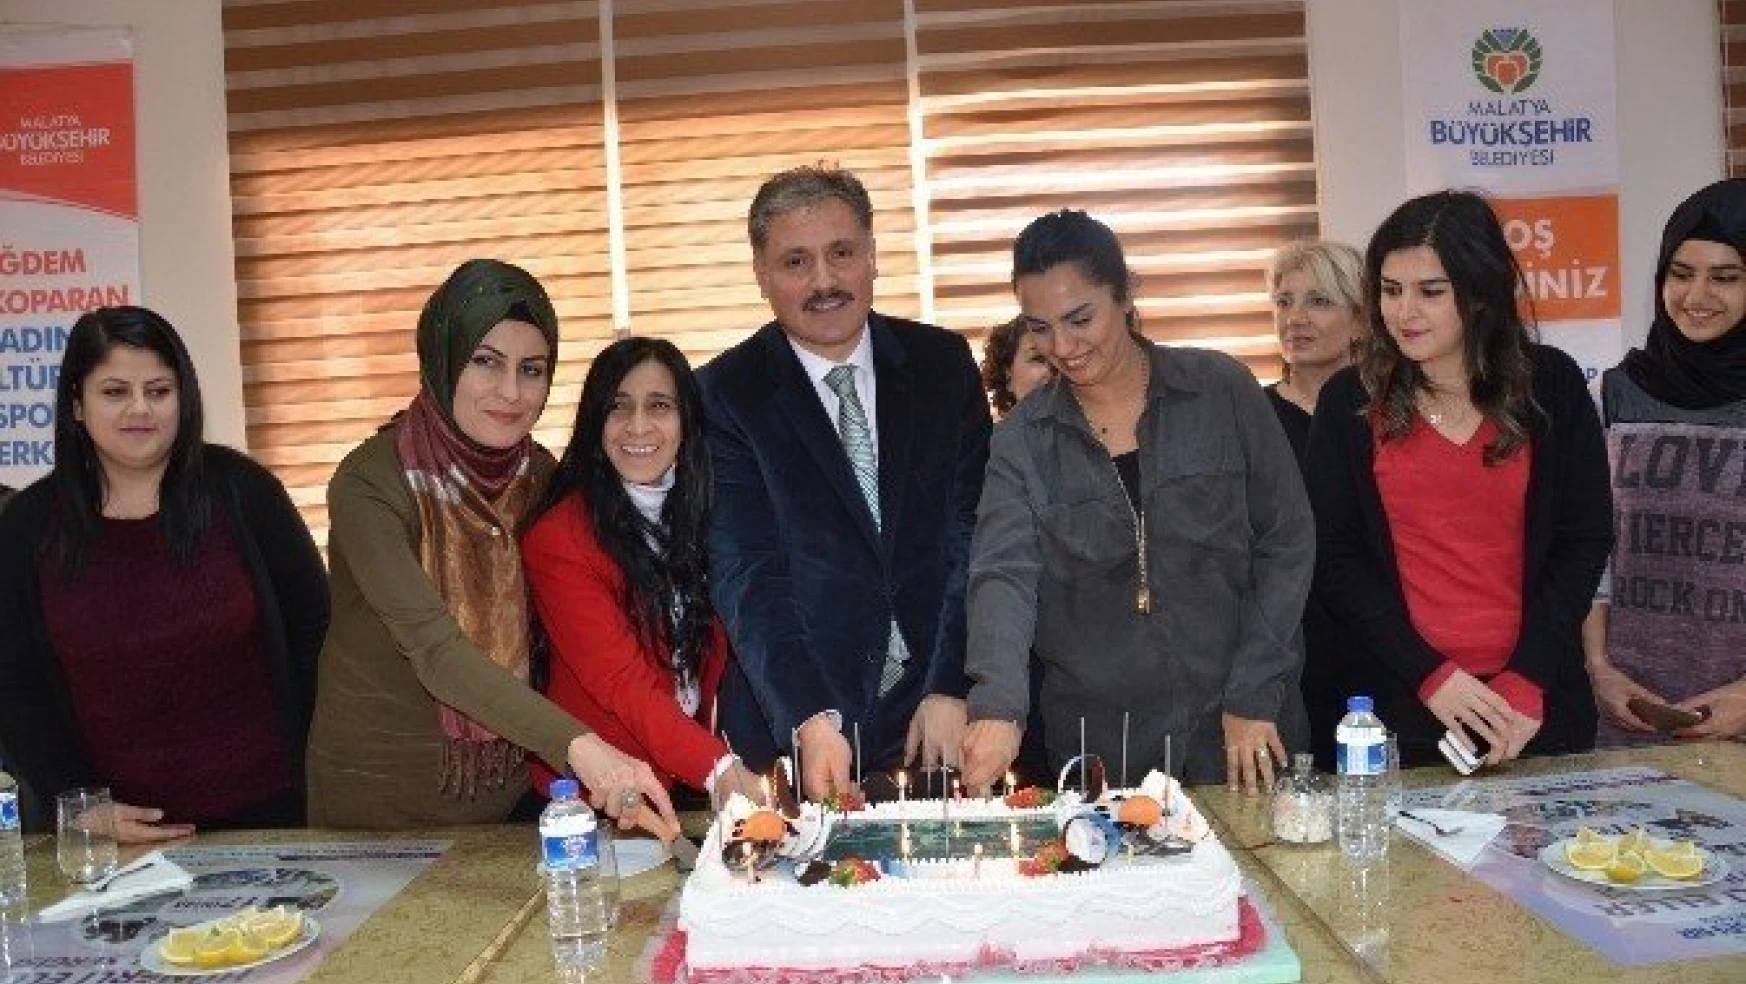 Büyükşehir'den bayan gazetecilere özel kutlama